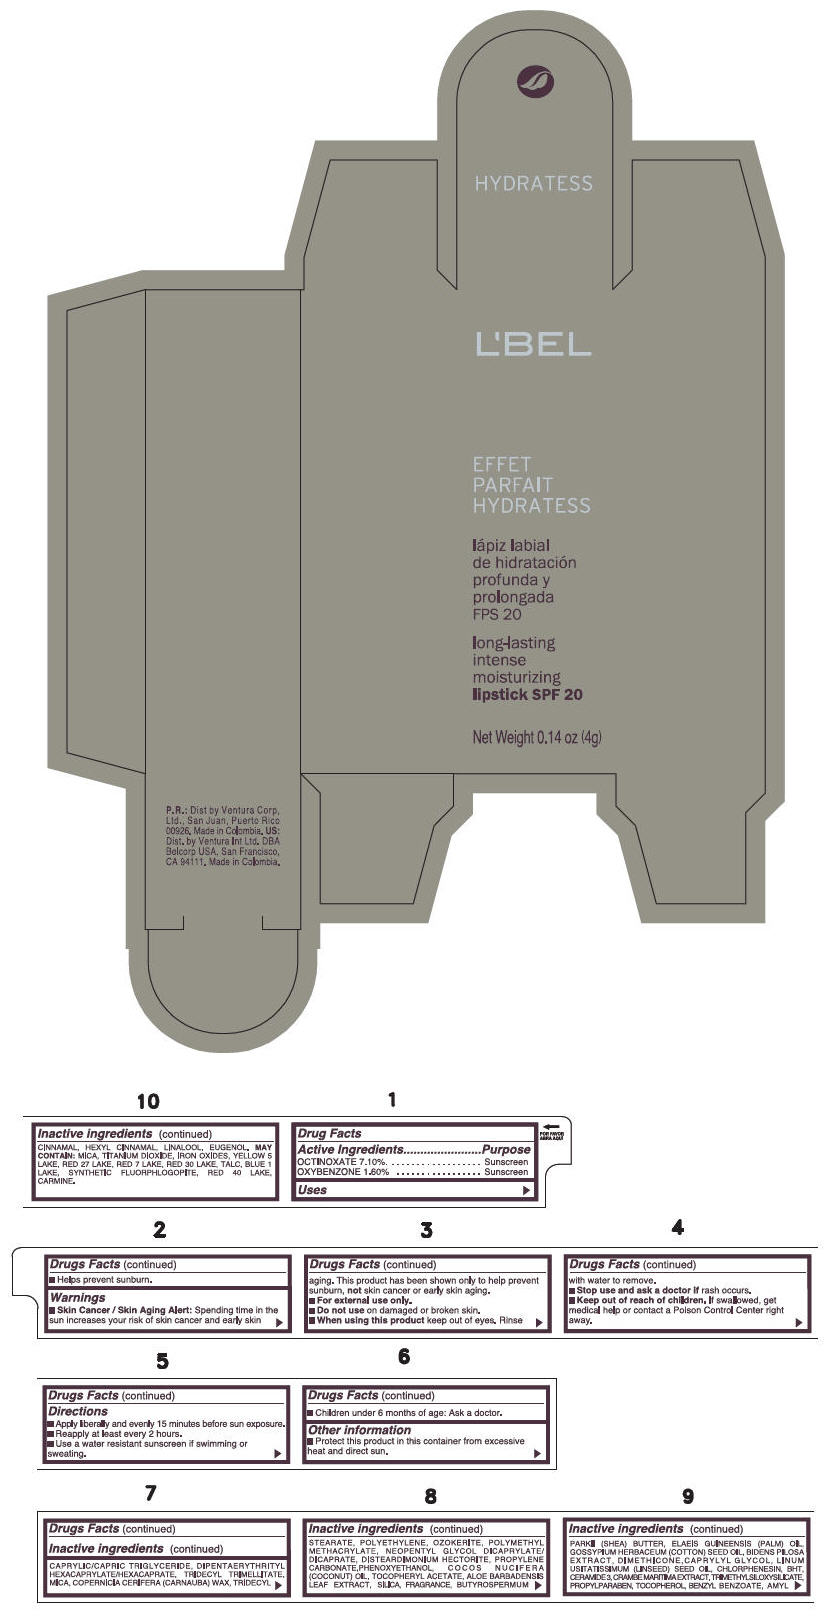 PRINCIPAL DISPLAY PANEL - 4 g Tube Box - (SOLEIL) - BROWN